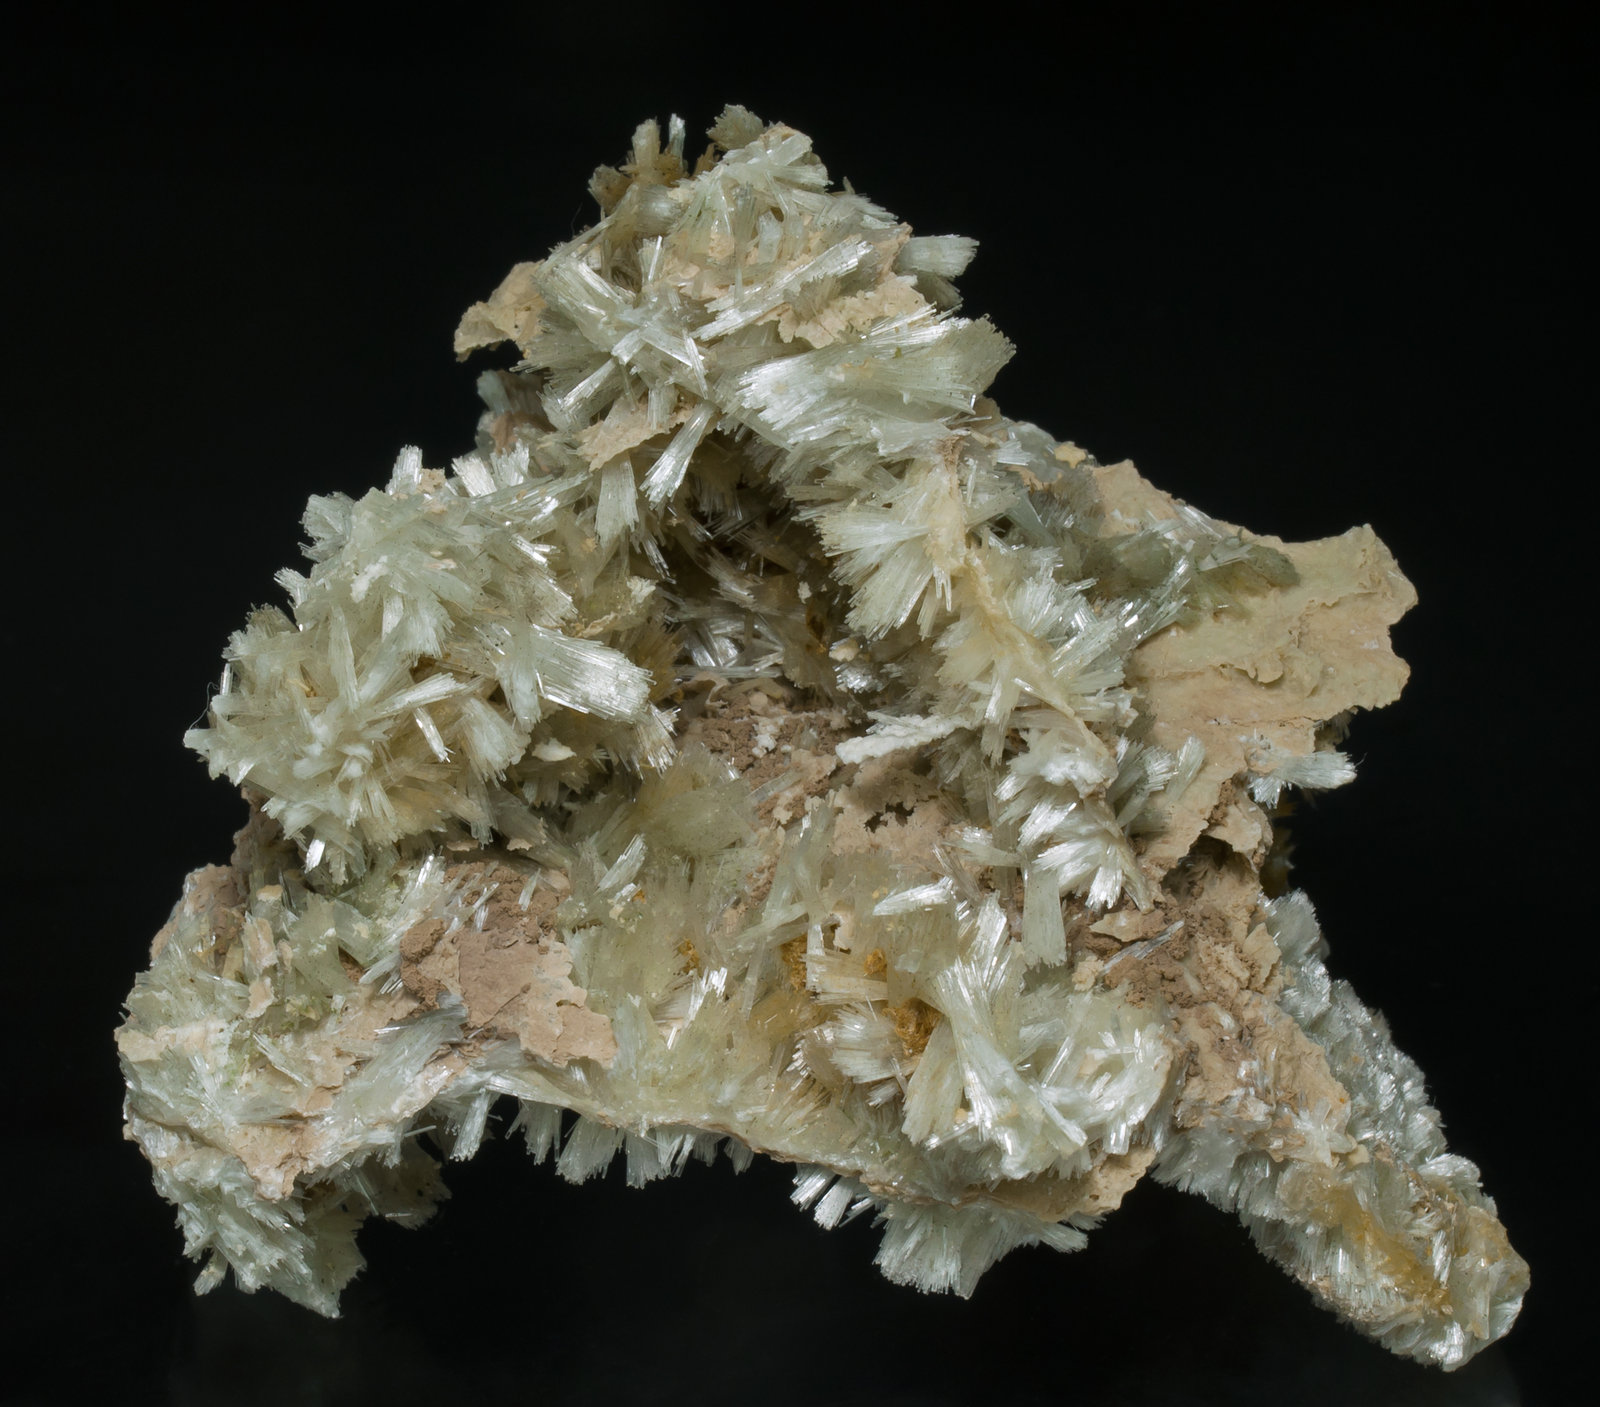 specimens/s_imagesAA1/Pectolite-ED86AA1f.jpg